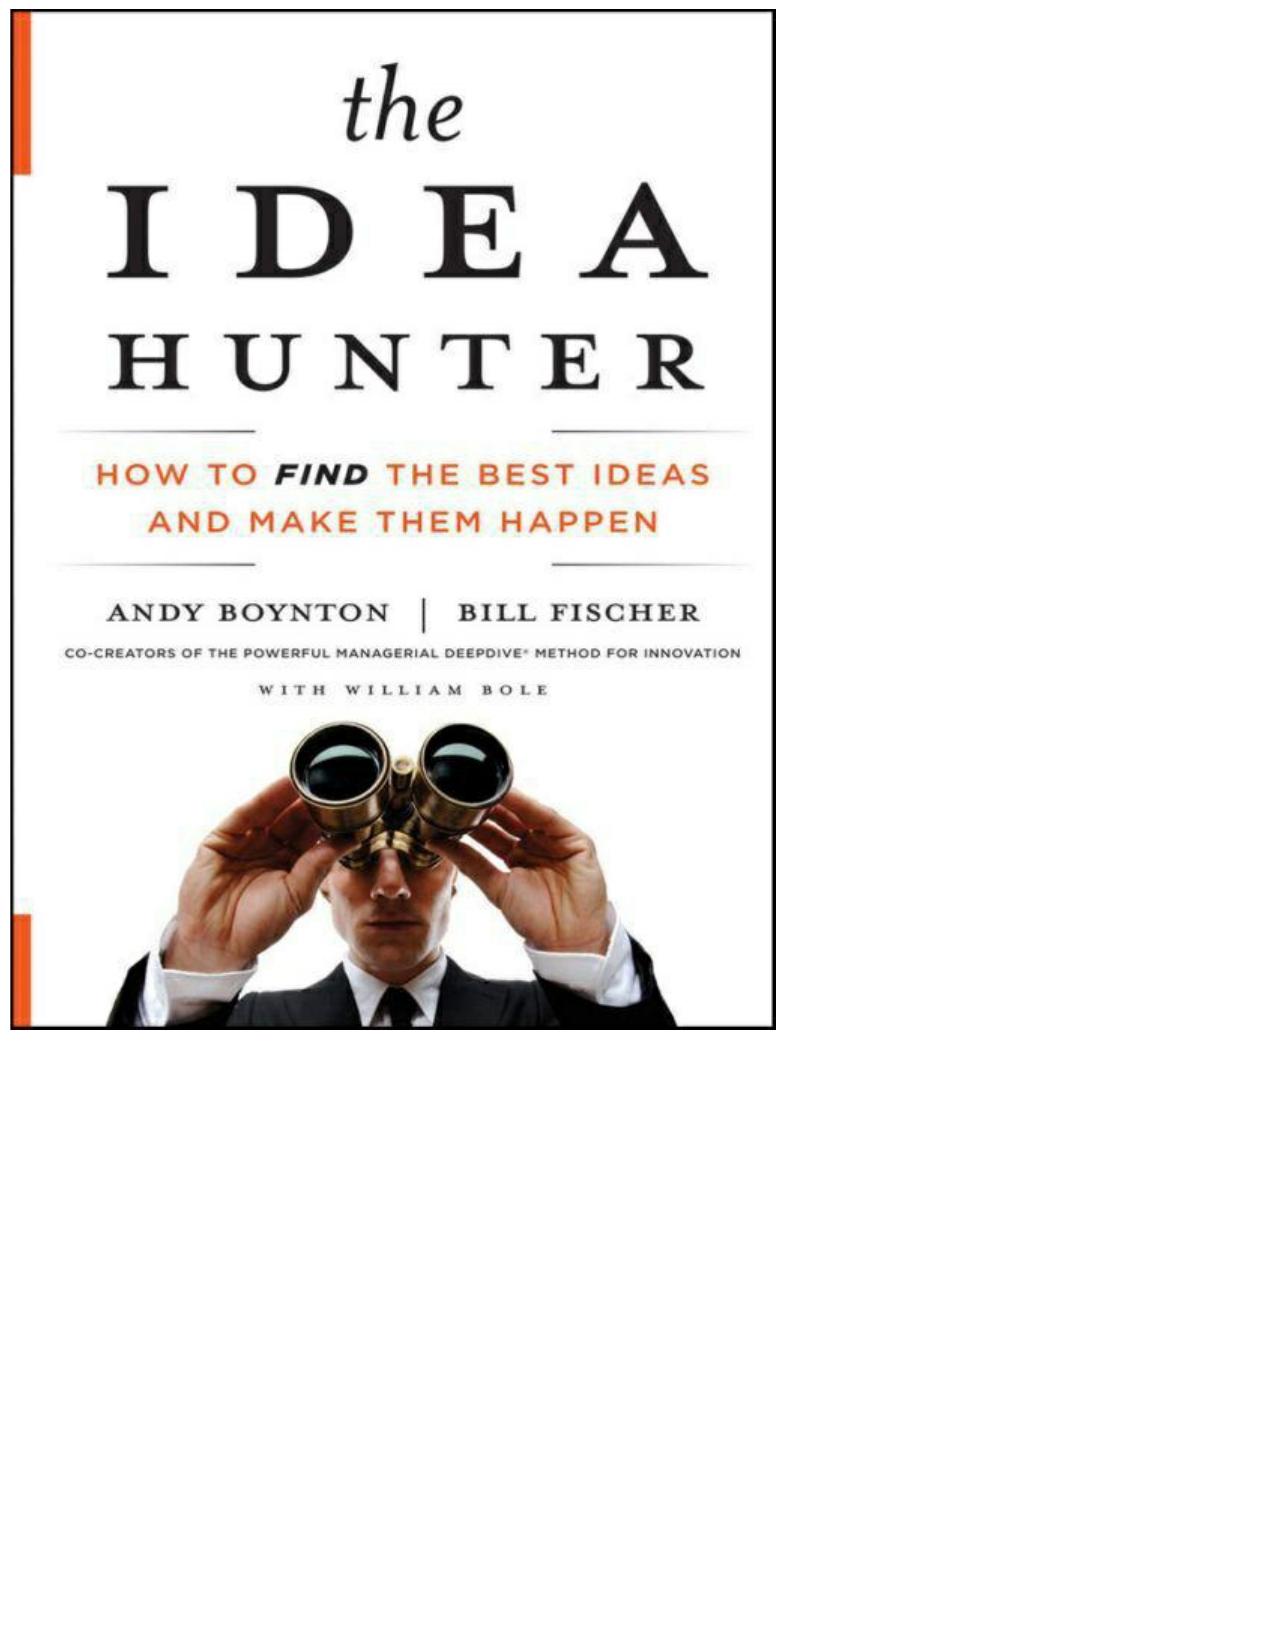 The Idea Hunter by Fischer Bill & Boynton Andy & Bole William